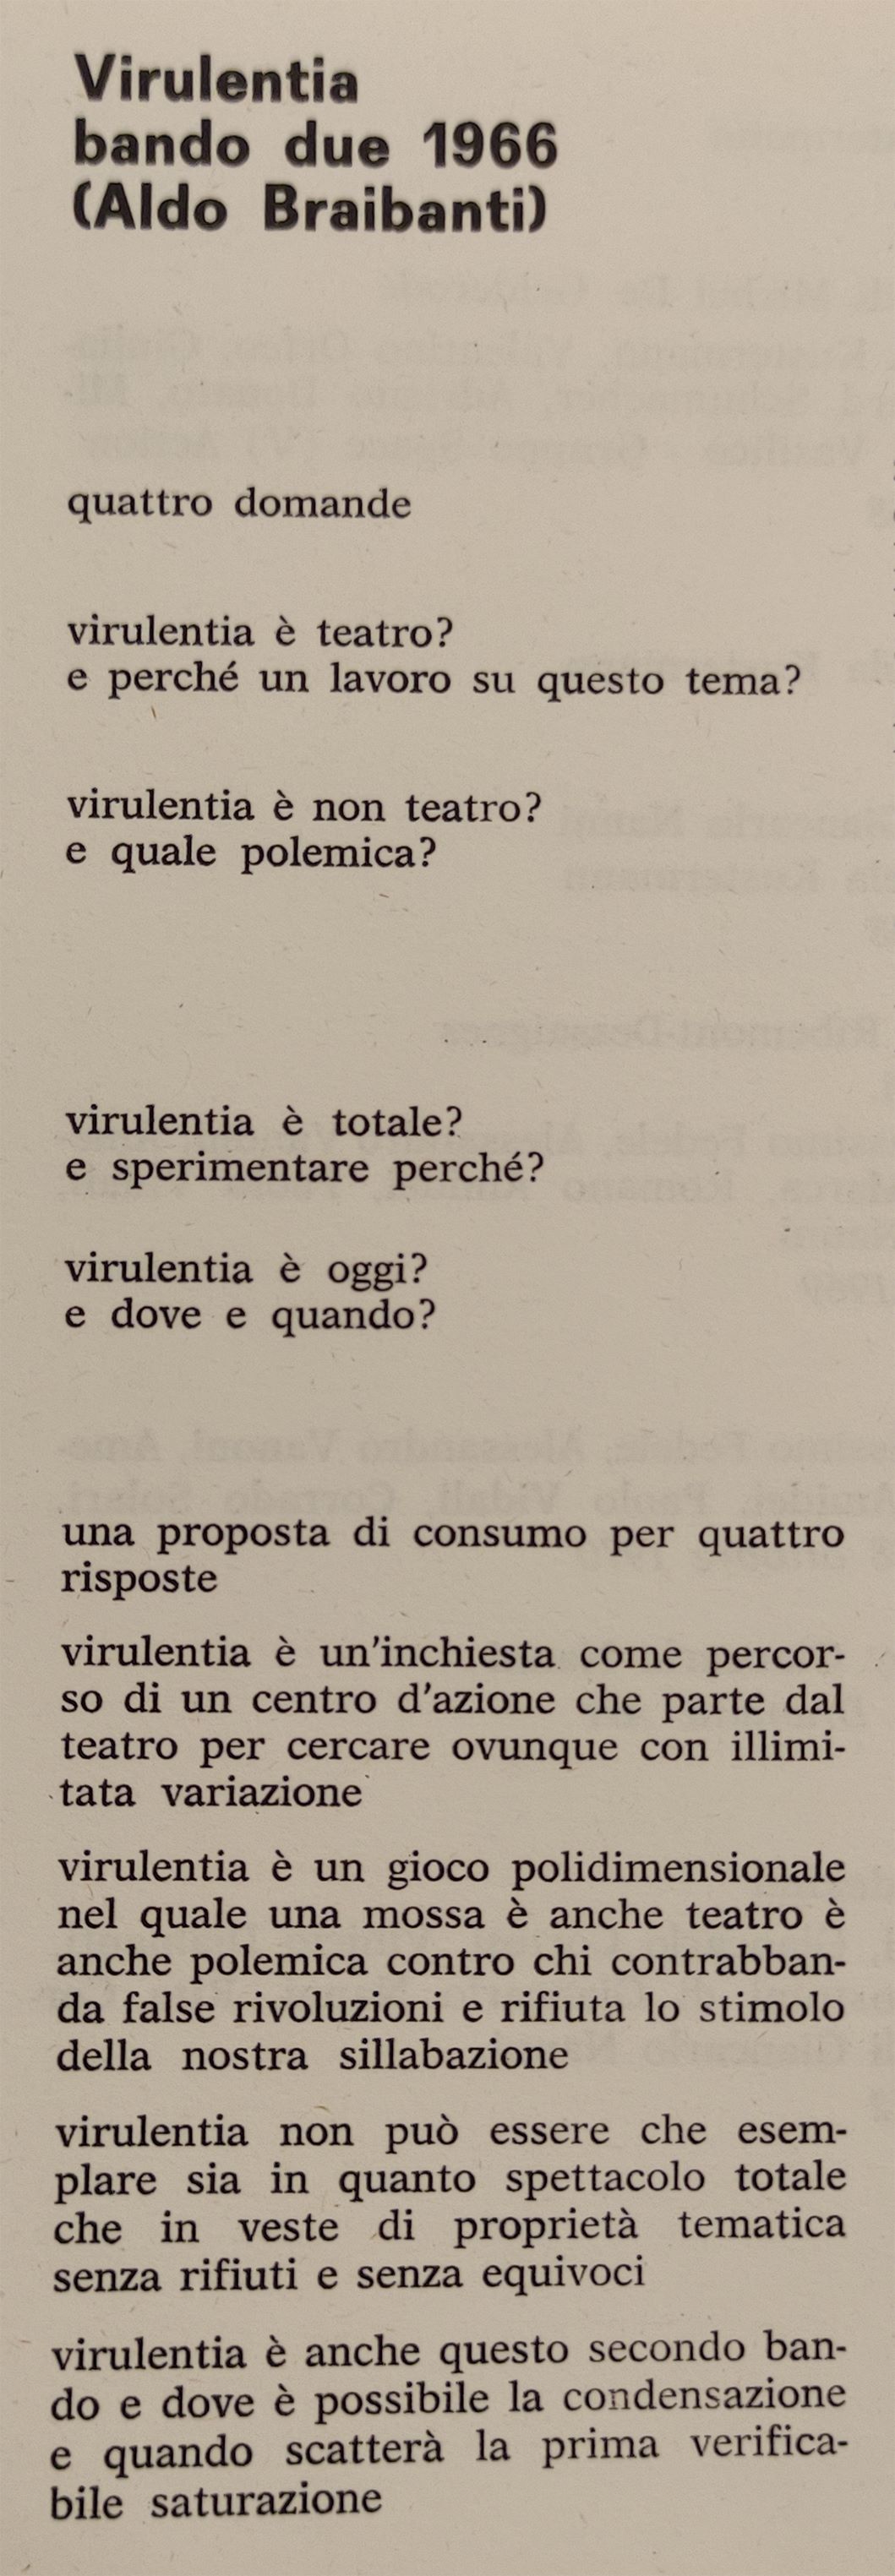 Presentazione del Secondo bando per &lsquo;Virulentia&rsquo;, in G. Bartolucci (a cura di), La scrittura scenica, Roma, Lerici, 1968
